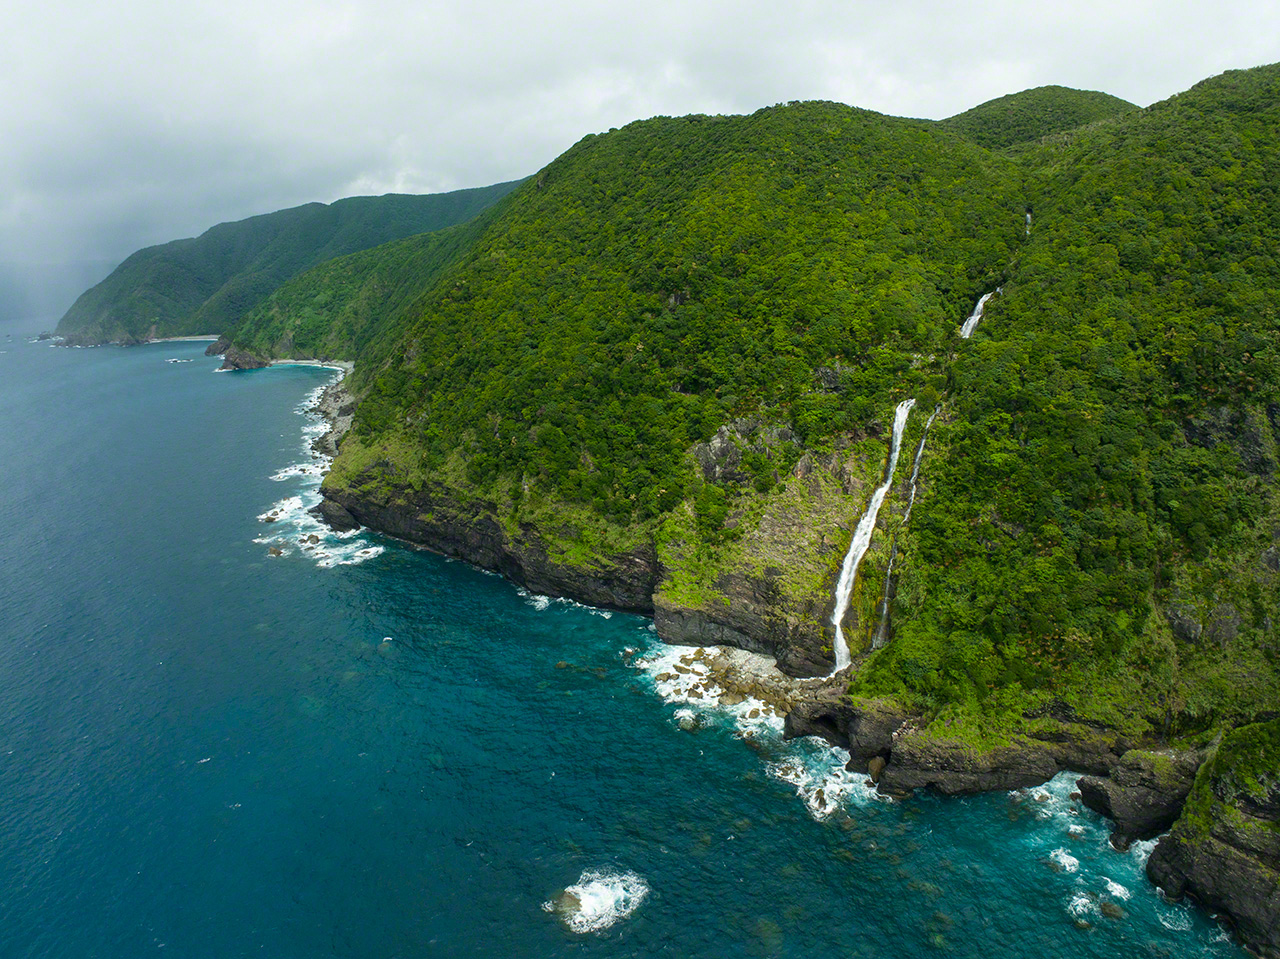 クルキチの滝。落差181メートルで、2021年に九州最大級の滝に認定された。奄美大島の東の海岸線は断崖絶壁が多く、こうした滝が多数点在している